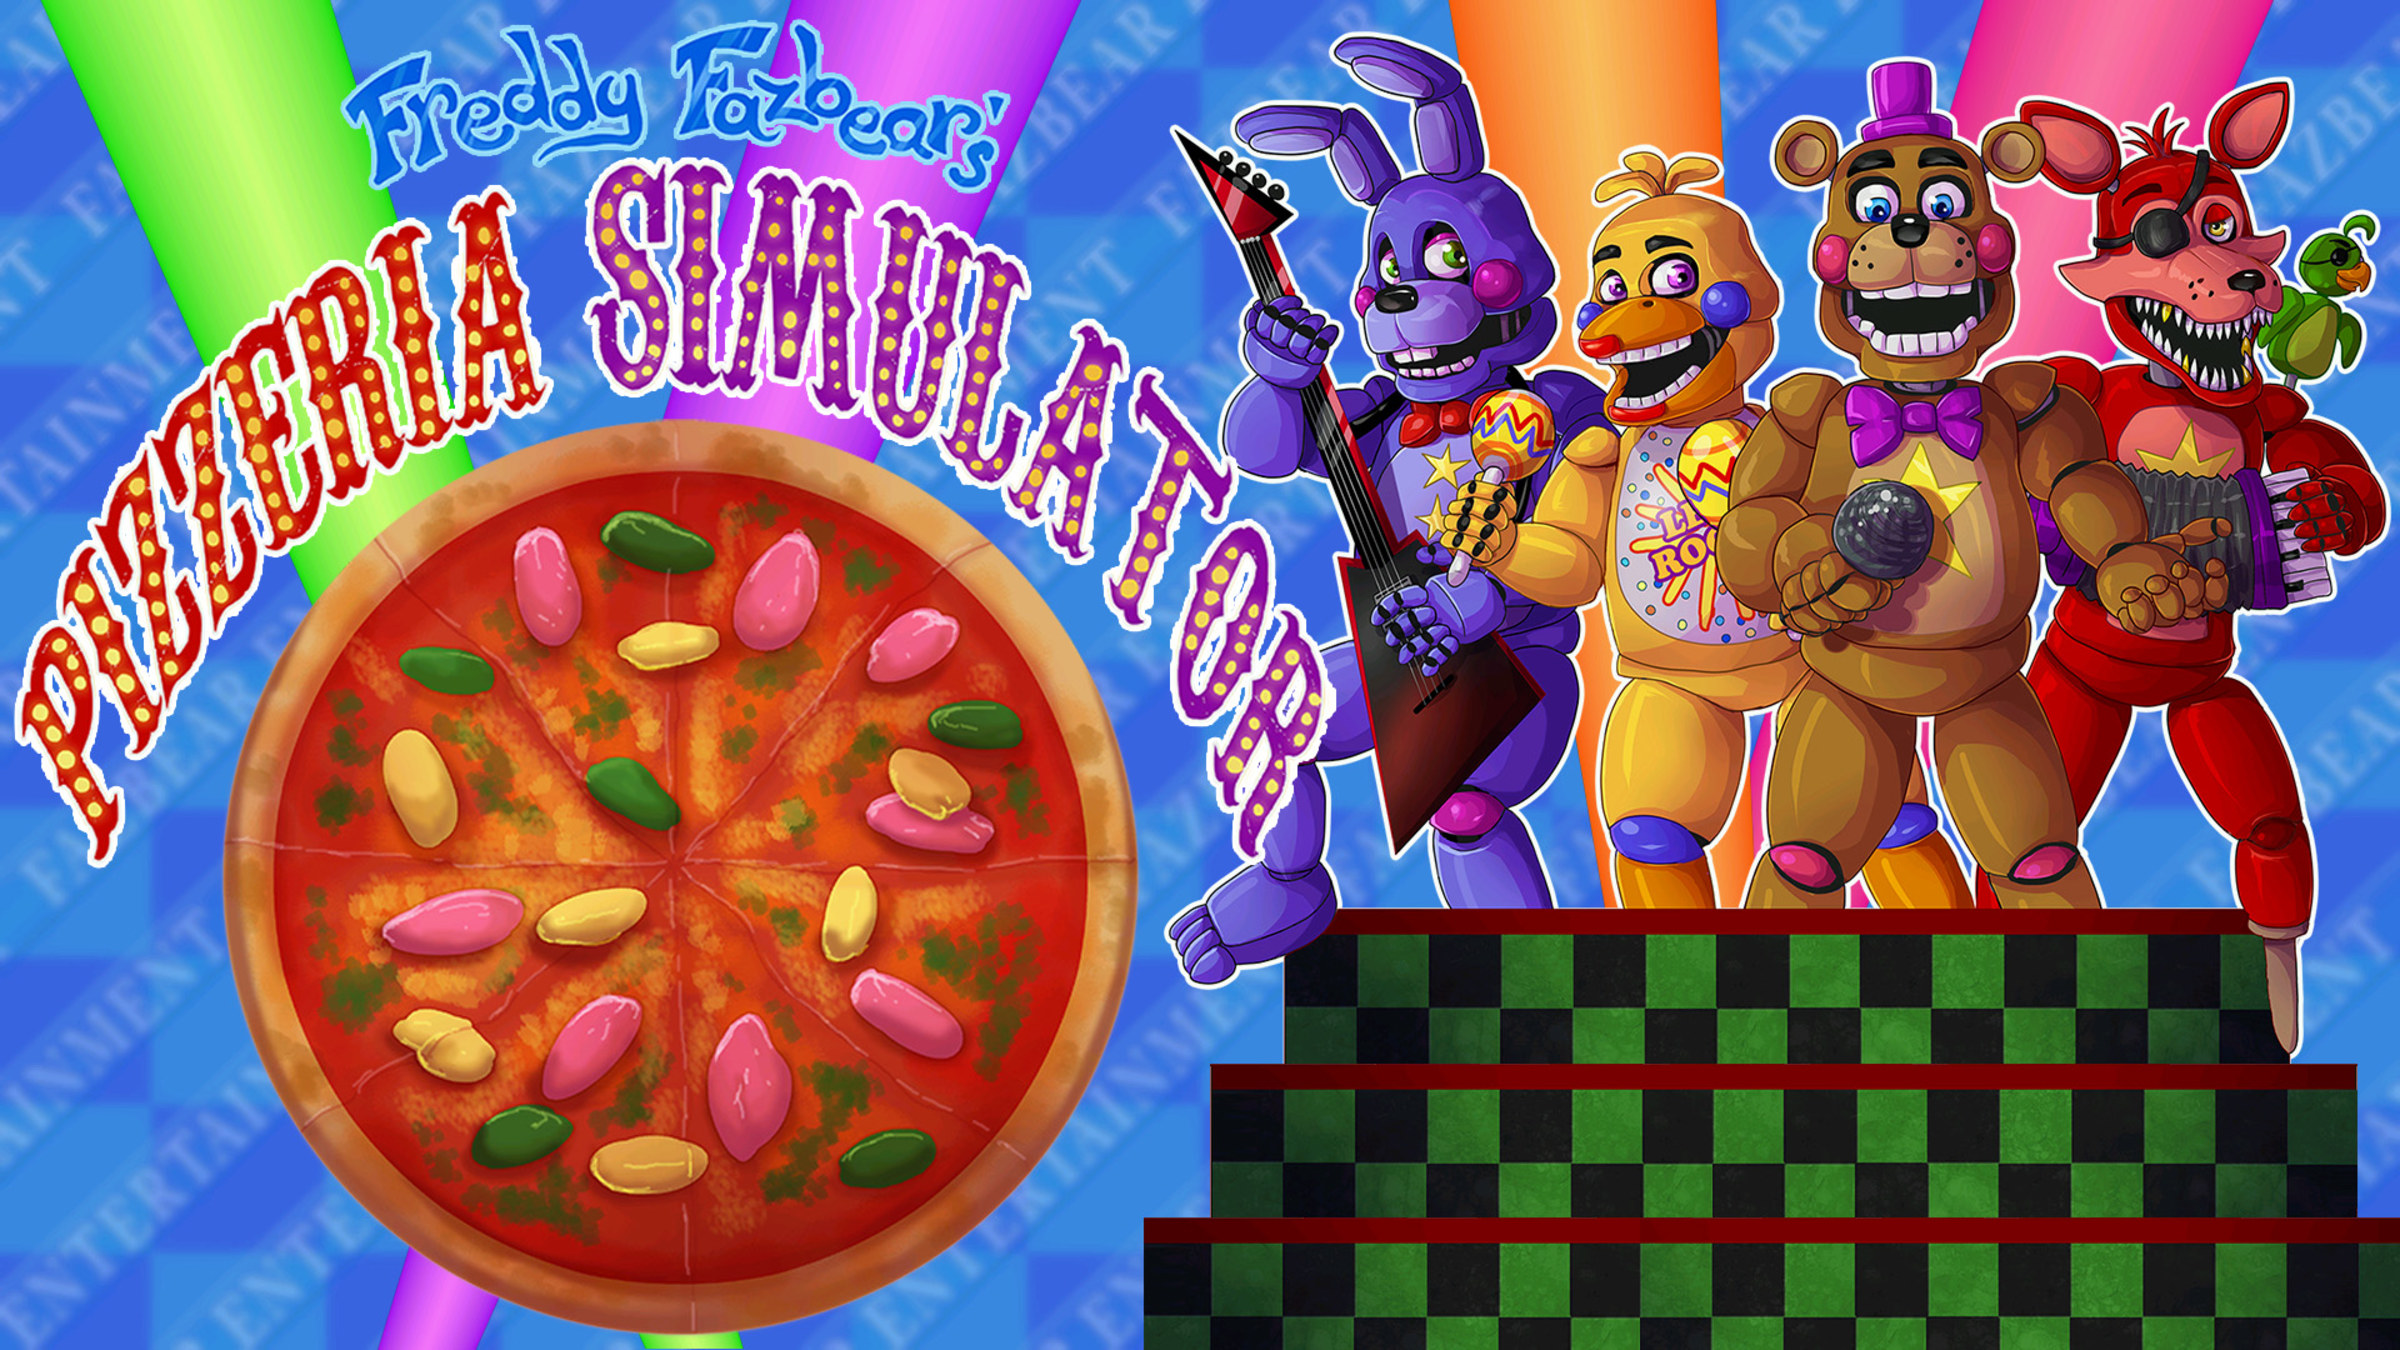 Steam Workshop::Fnaf 6: Freddy Fazbear's Pizza